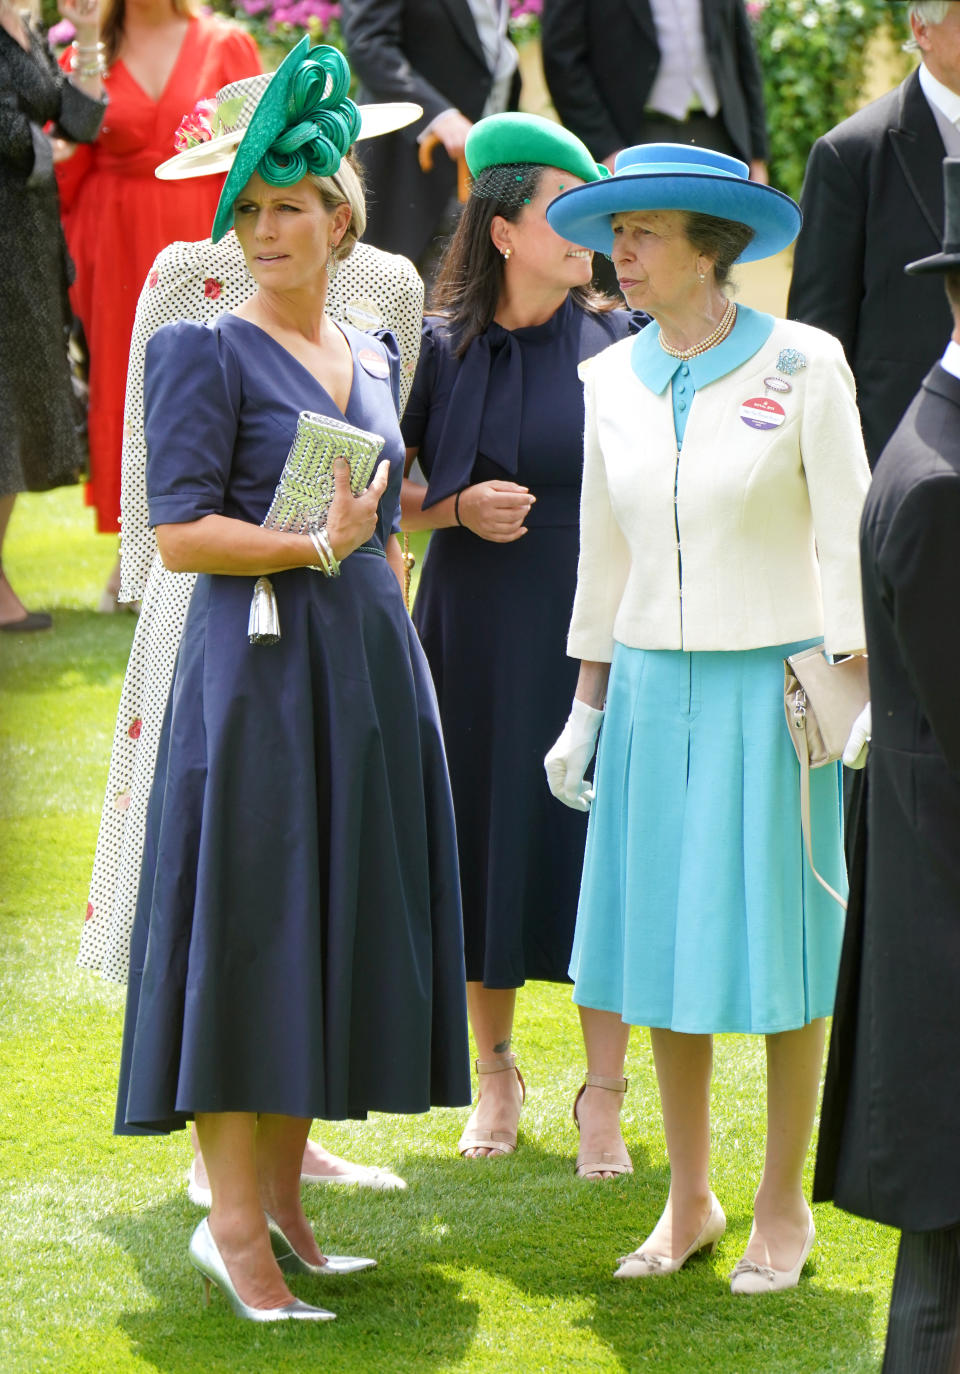 Zara Tindall (po lewej) i Princess Royal przybywają drugiego dnia Royal Ascot na tor wyścigowy Ascot w Berkshire.  Data zdjęcia: środa, 21 czerwca 2023 r. (Zdjęcie: Jonathan Brady/PA Images za pośrednictwem Getty Images)